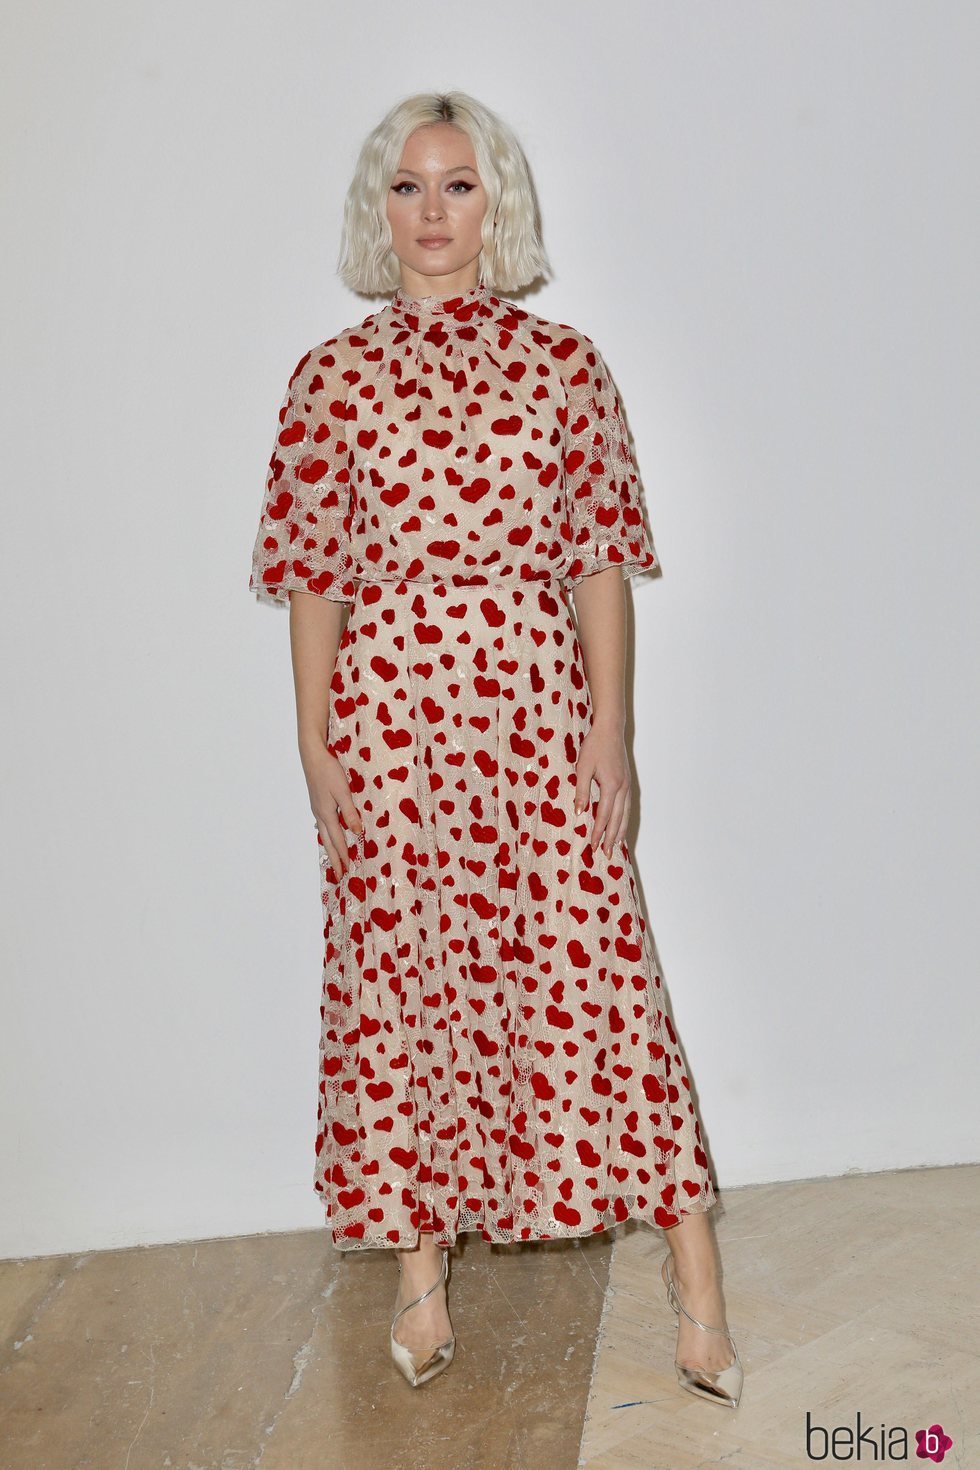 Zara Larsson con un vestido estampado en la Semana de la Moda de París